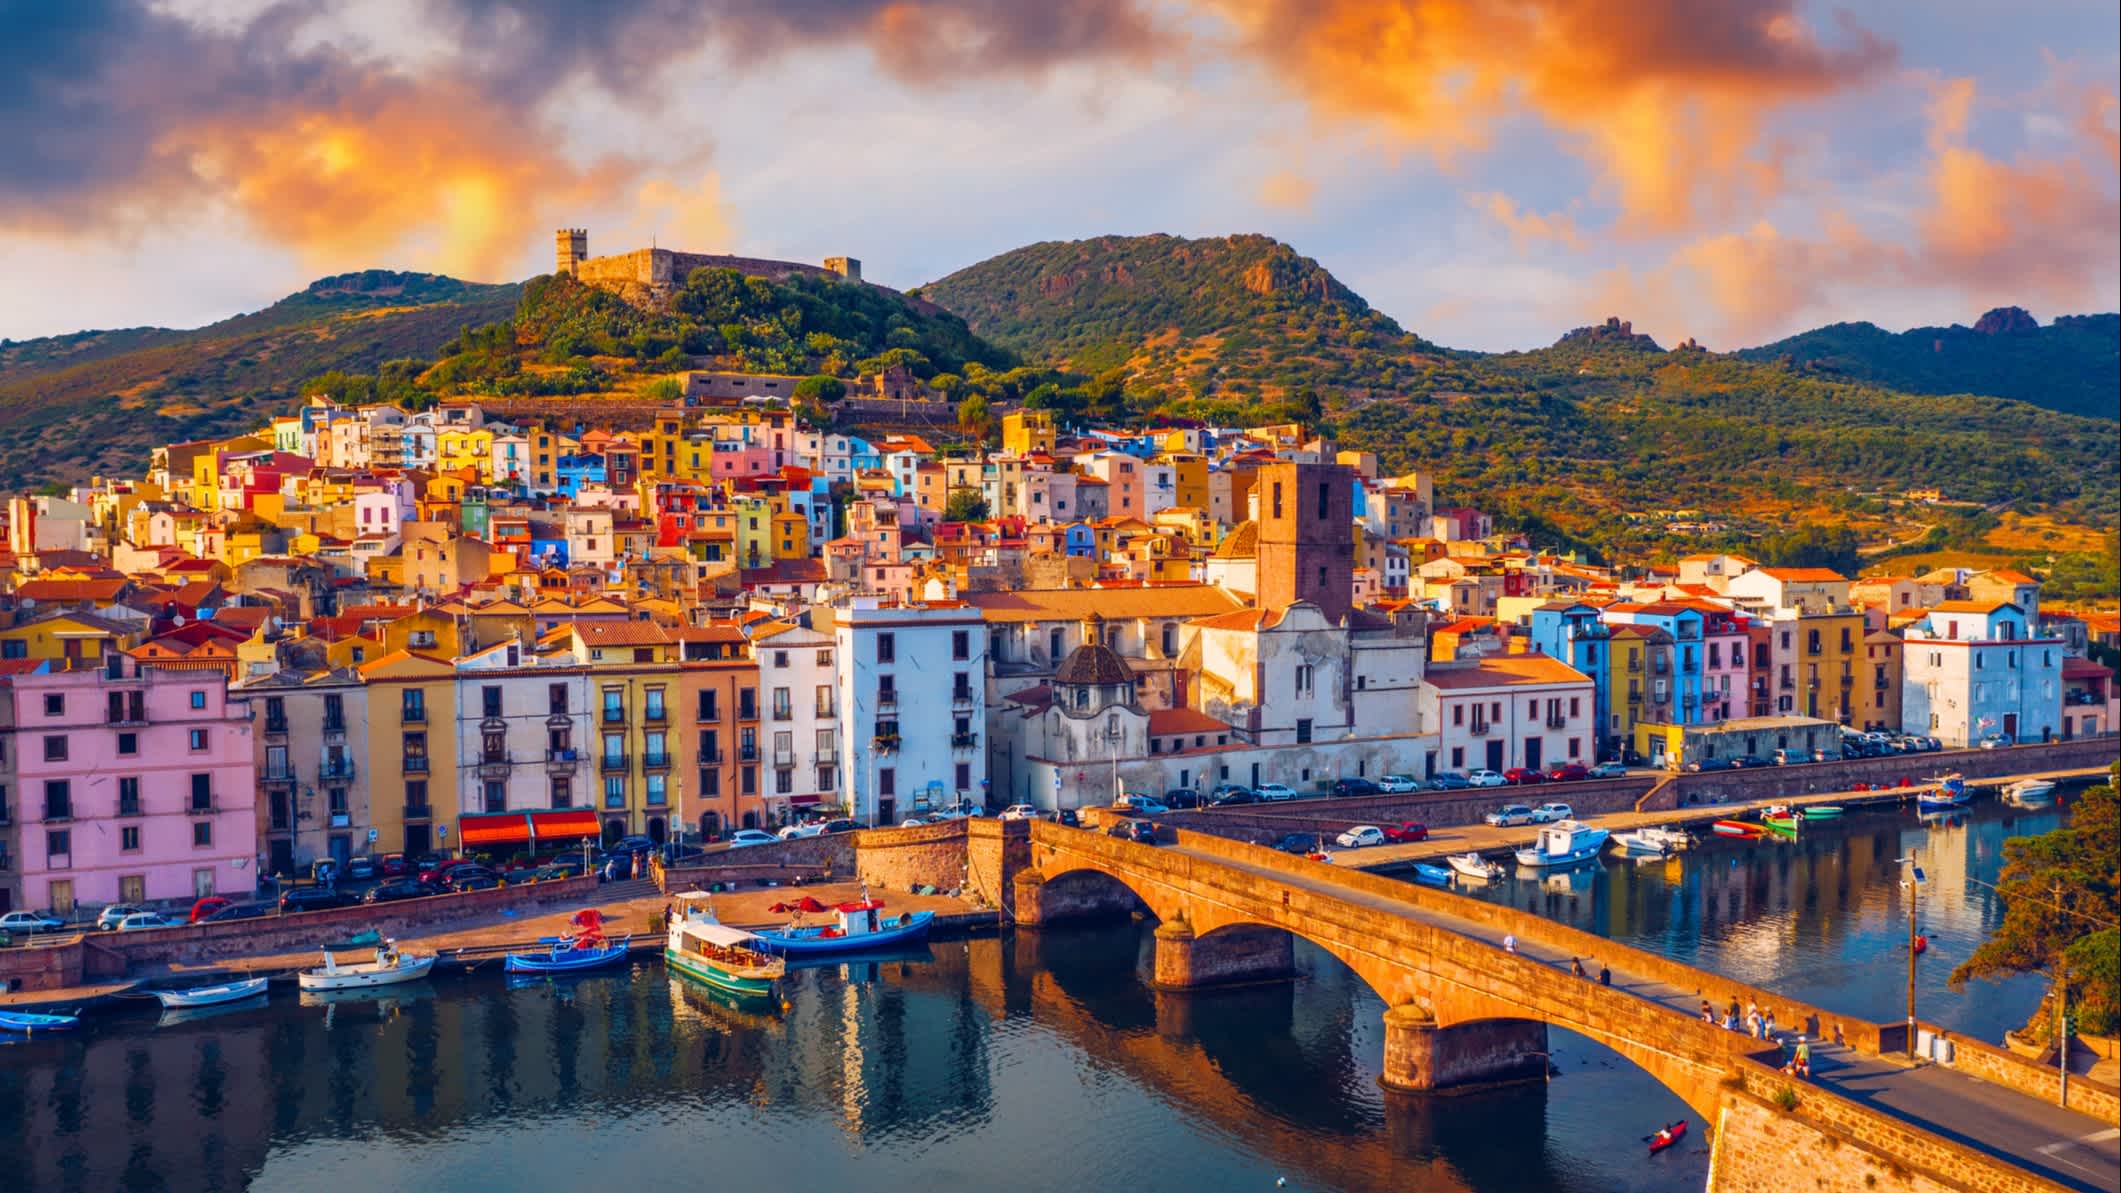 Vue de la ville de Bosa au soleil couchant, sur l'île de Sardaigne, Italie.